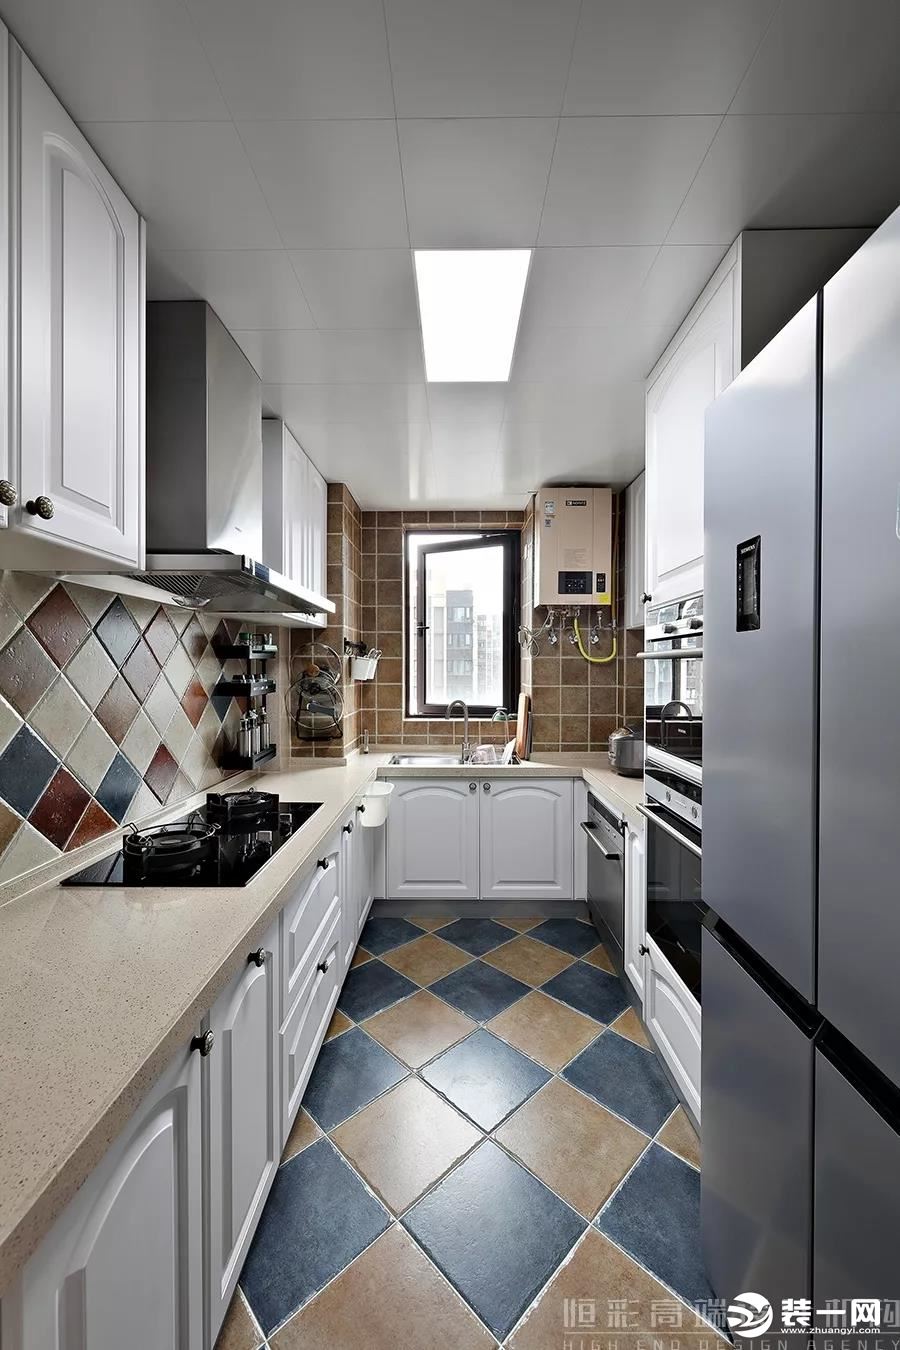 厨房仿古面的墙砖、地板采用双色拼接，具备功能强大又简单耐用的厨具设备。